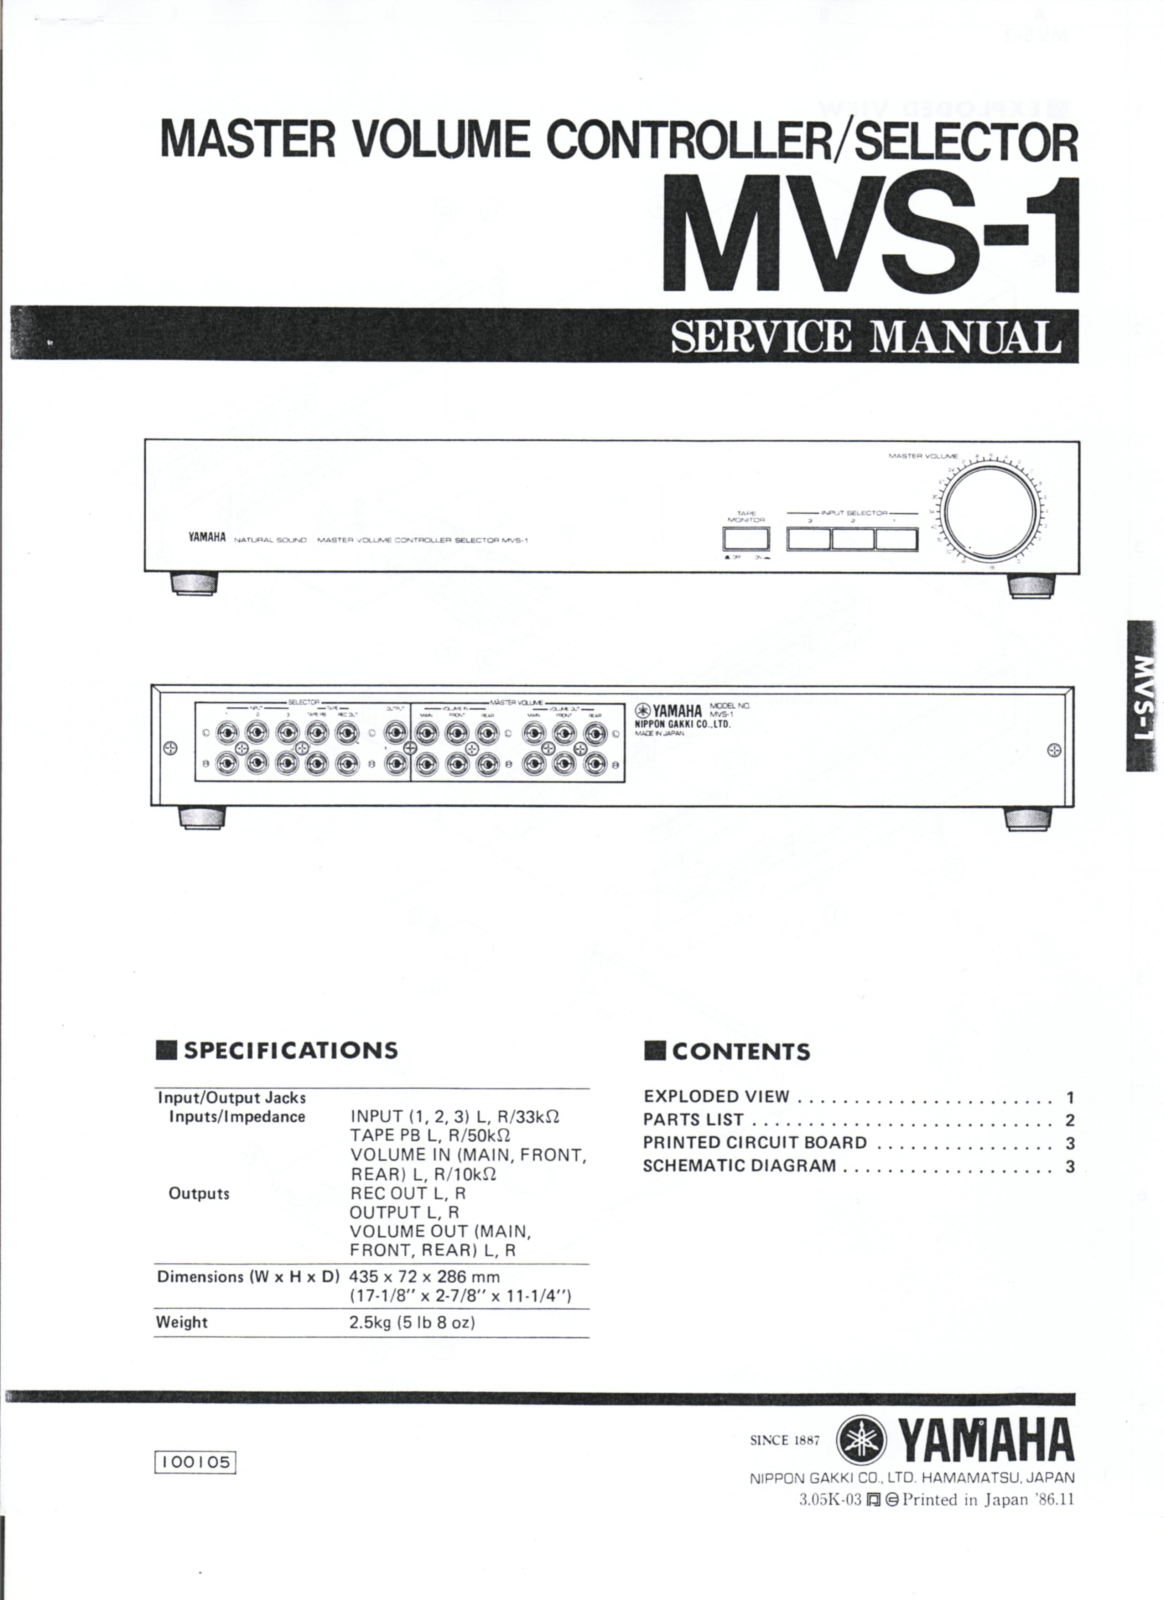 Yamaha MVS-1 Service Manual